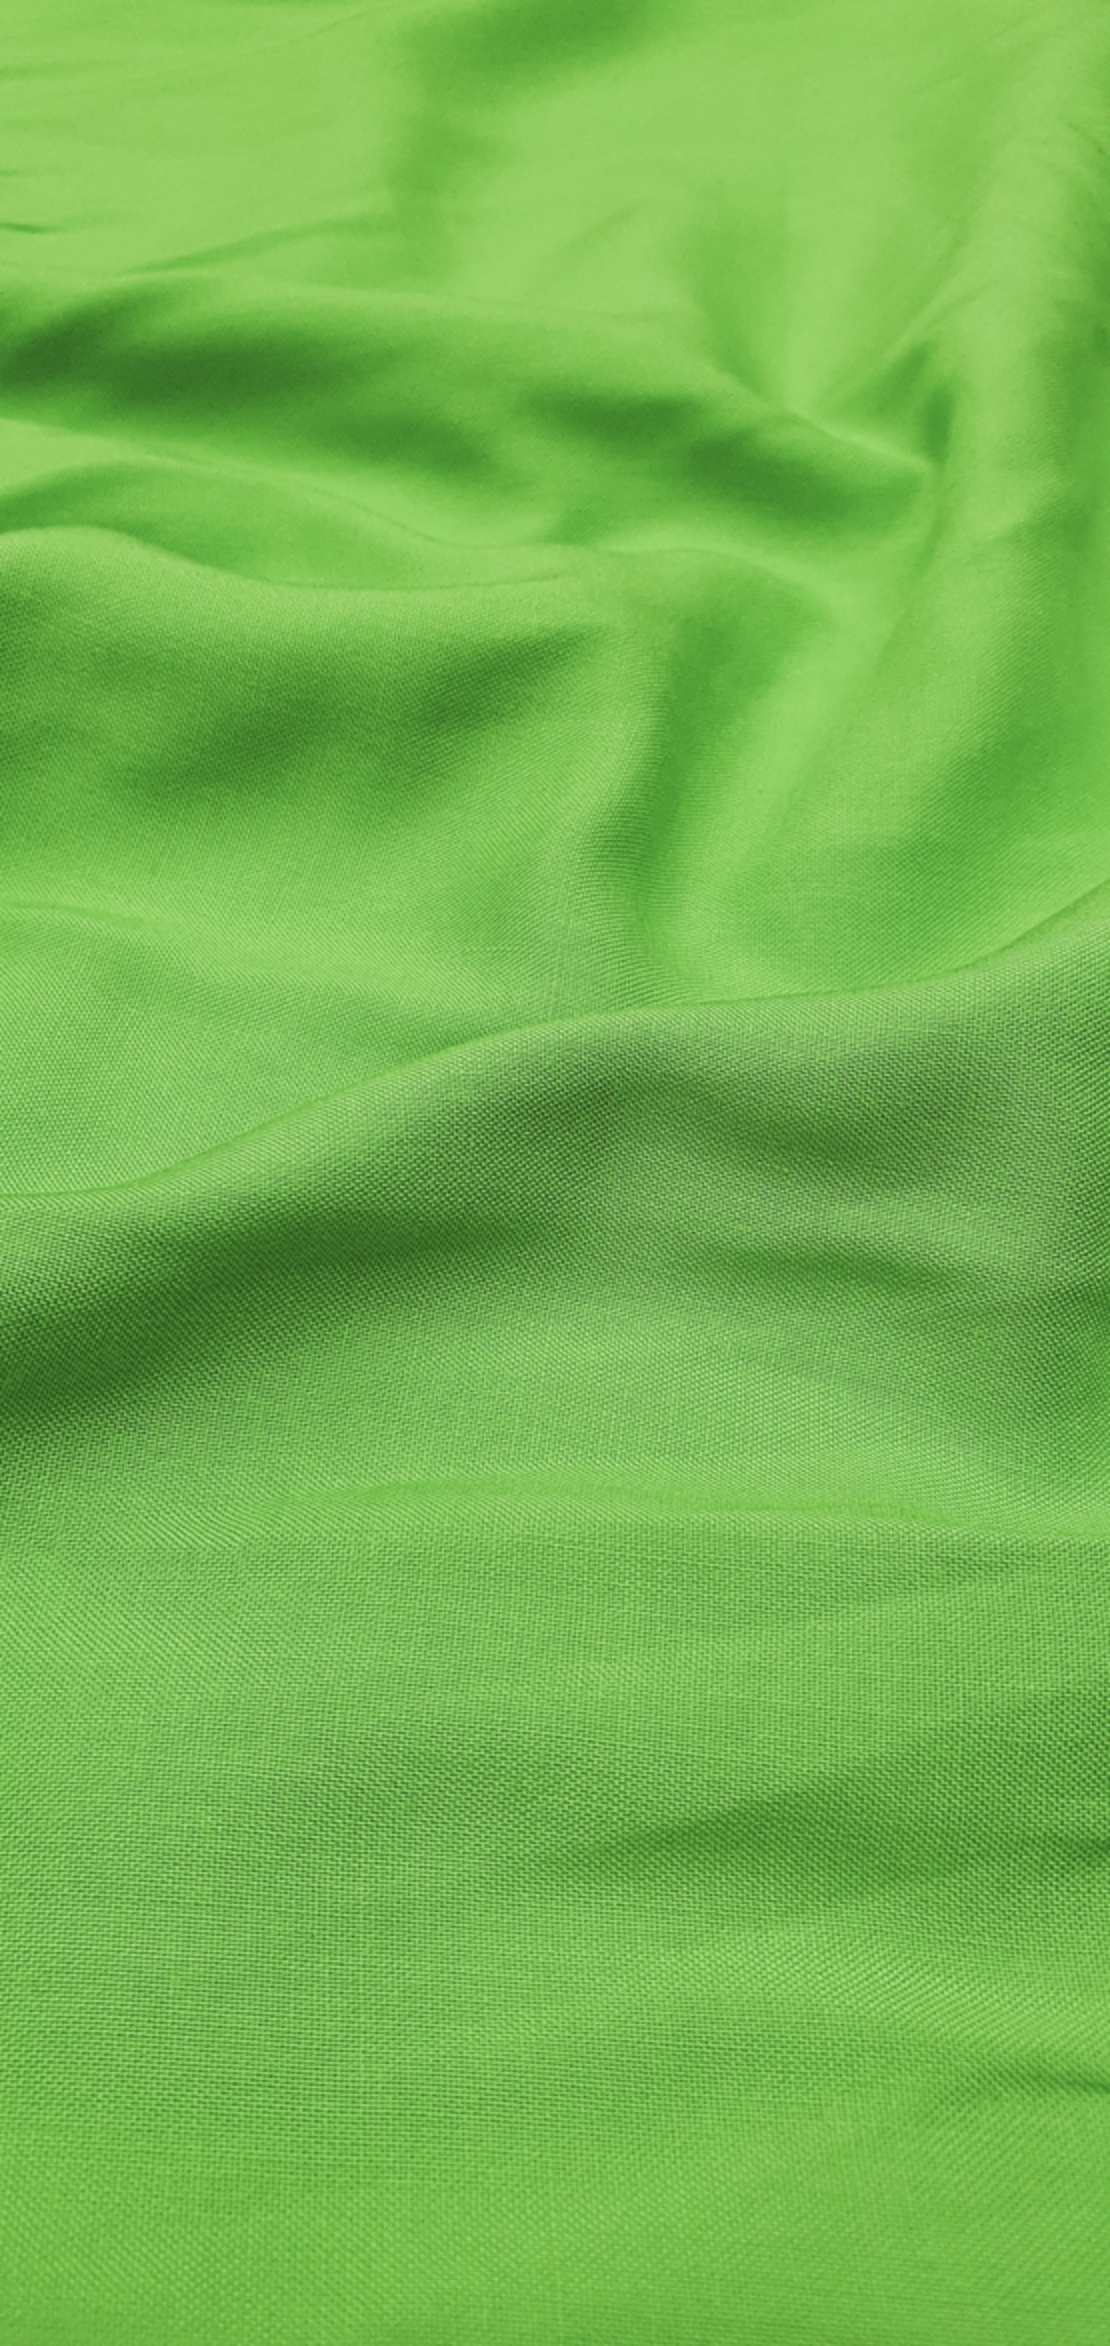 אריג ויסקוזה צבע ירוק חי